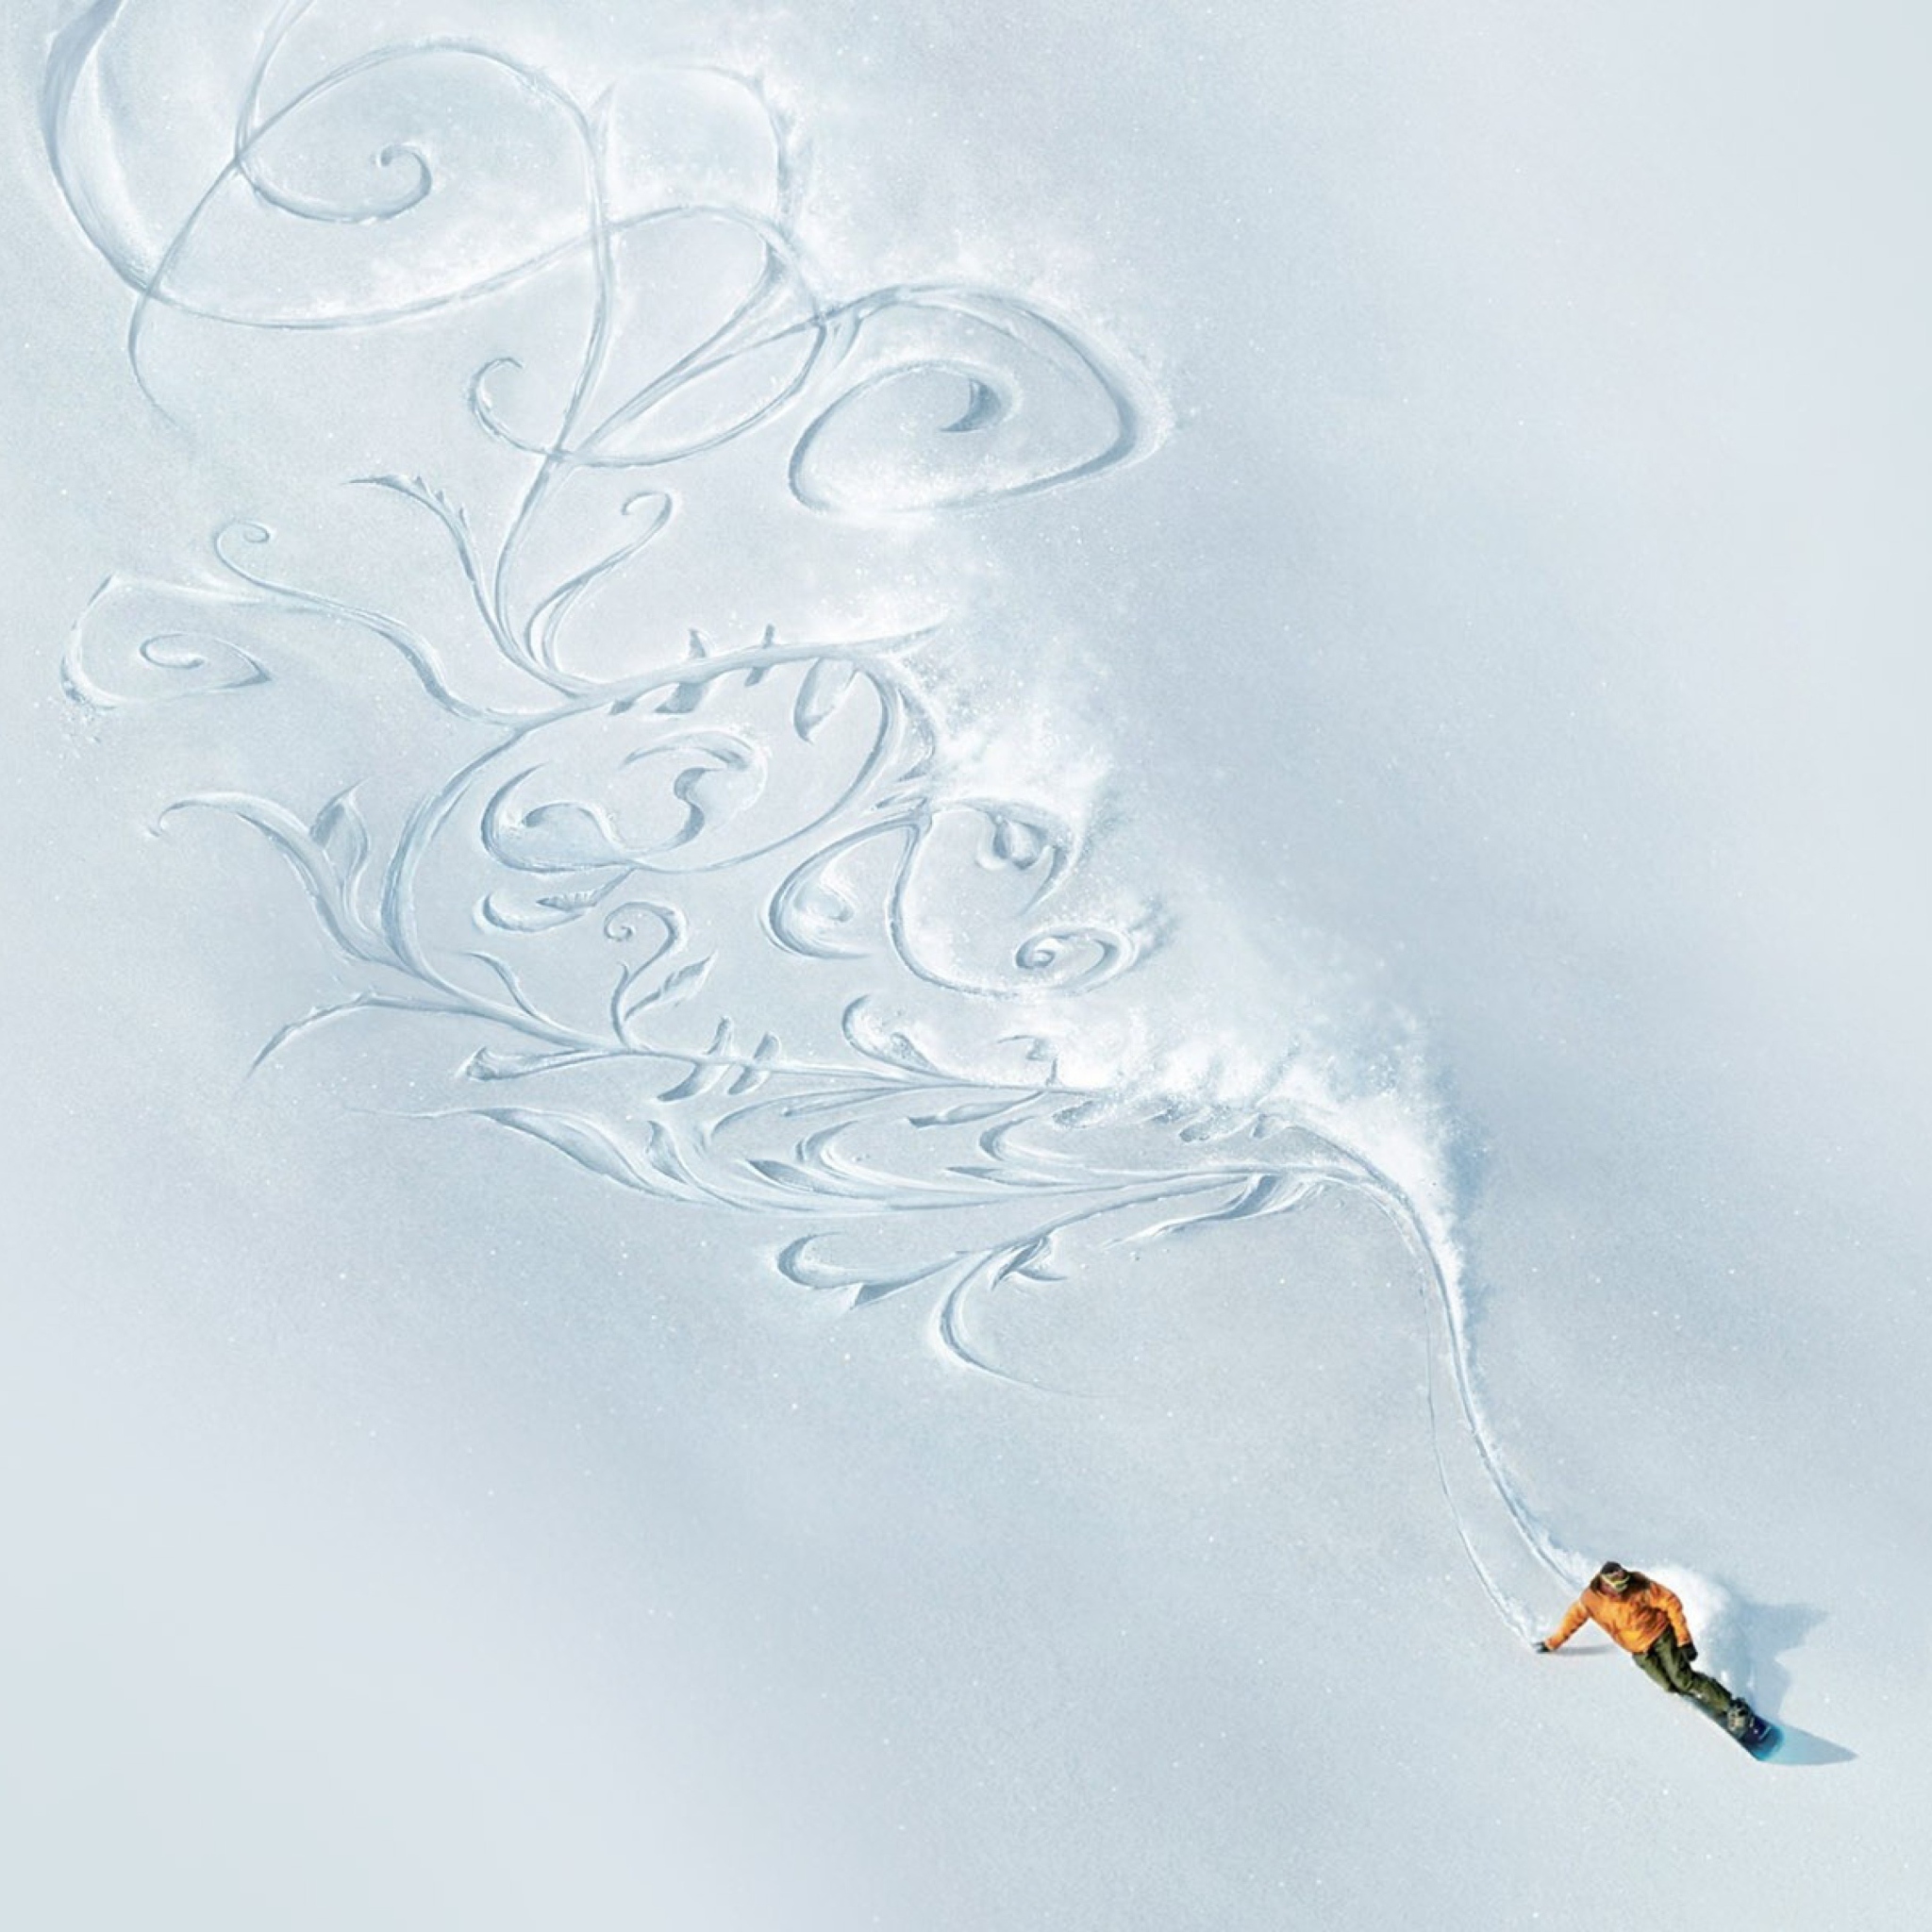 Das Snowboarding Art Wallpaper 2048x2048